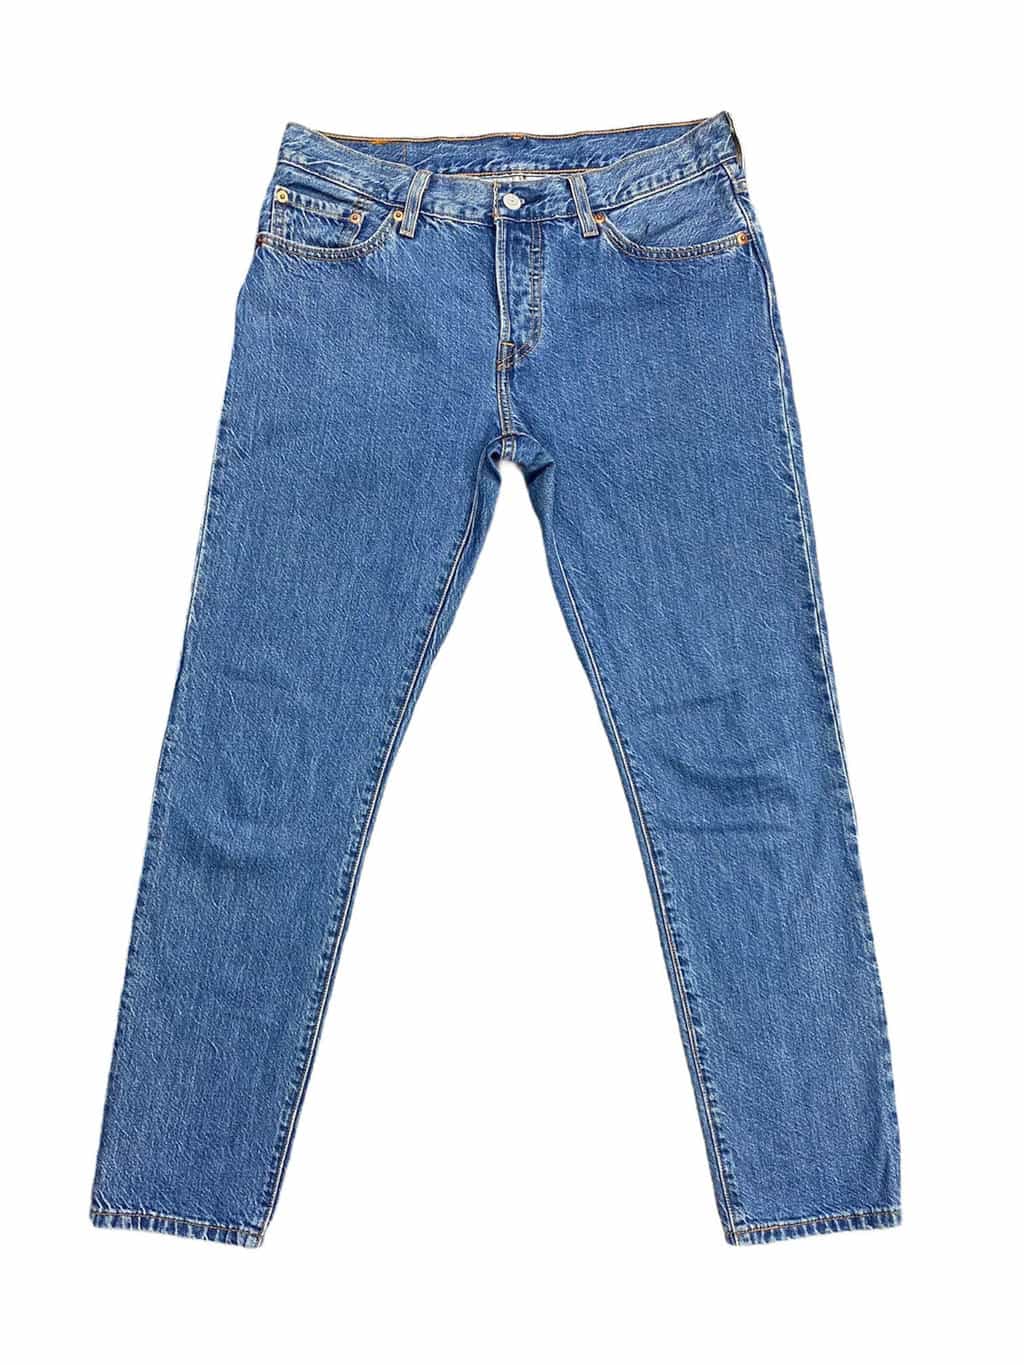 Levis 501 CT Jeans in Blue Stonewashed Denim - St Cyr Vintage